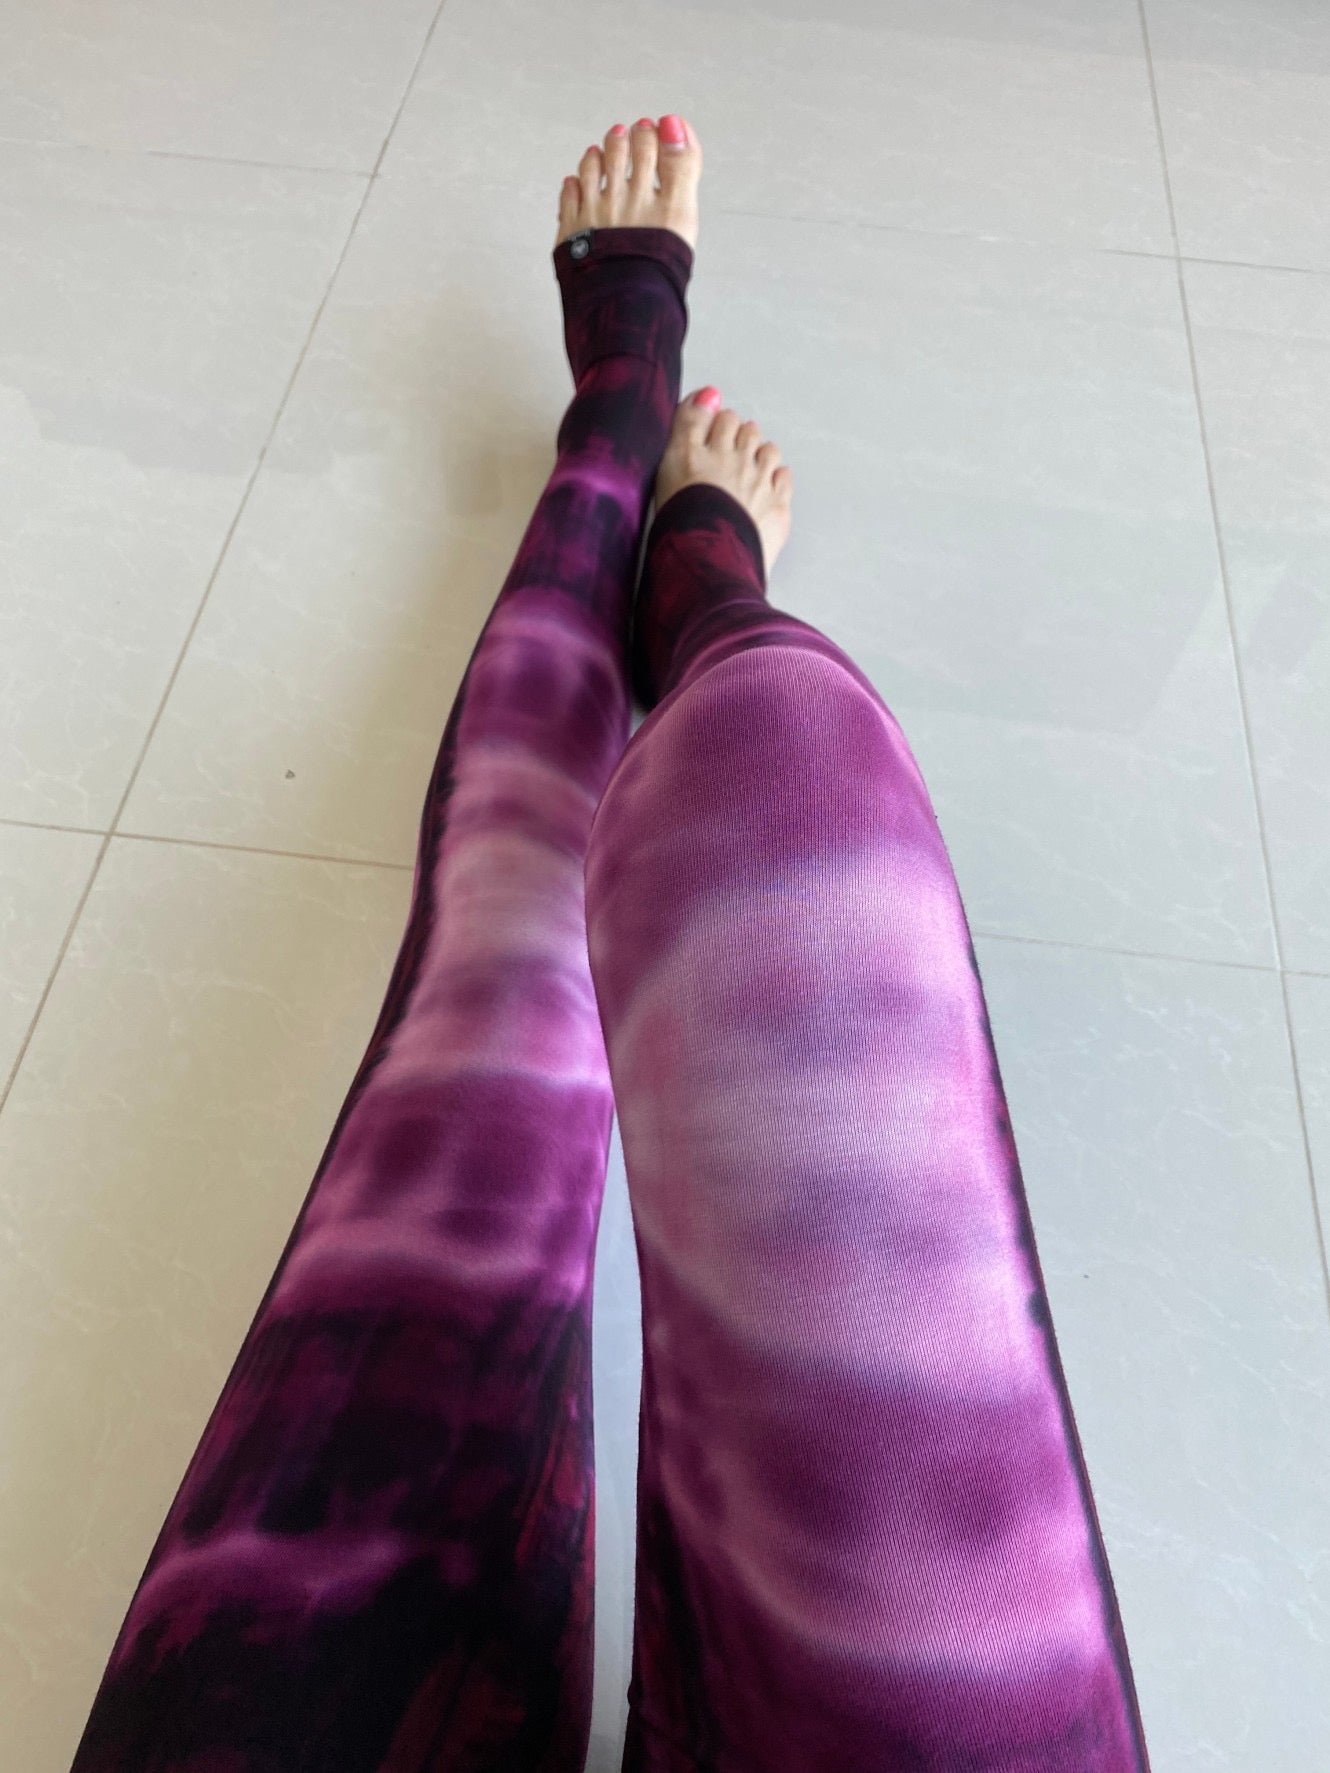 Dark purple gradient soft leggings